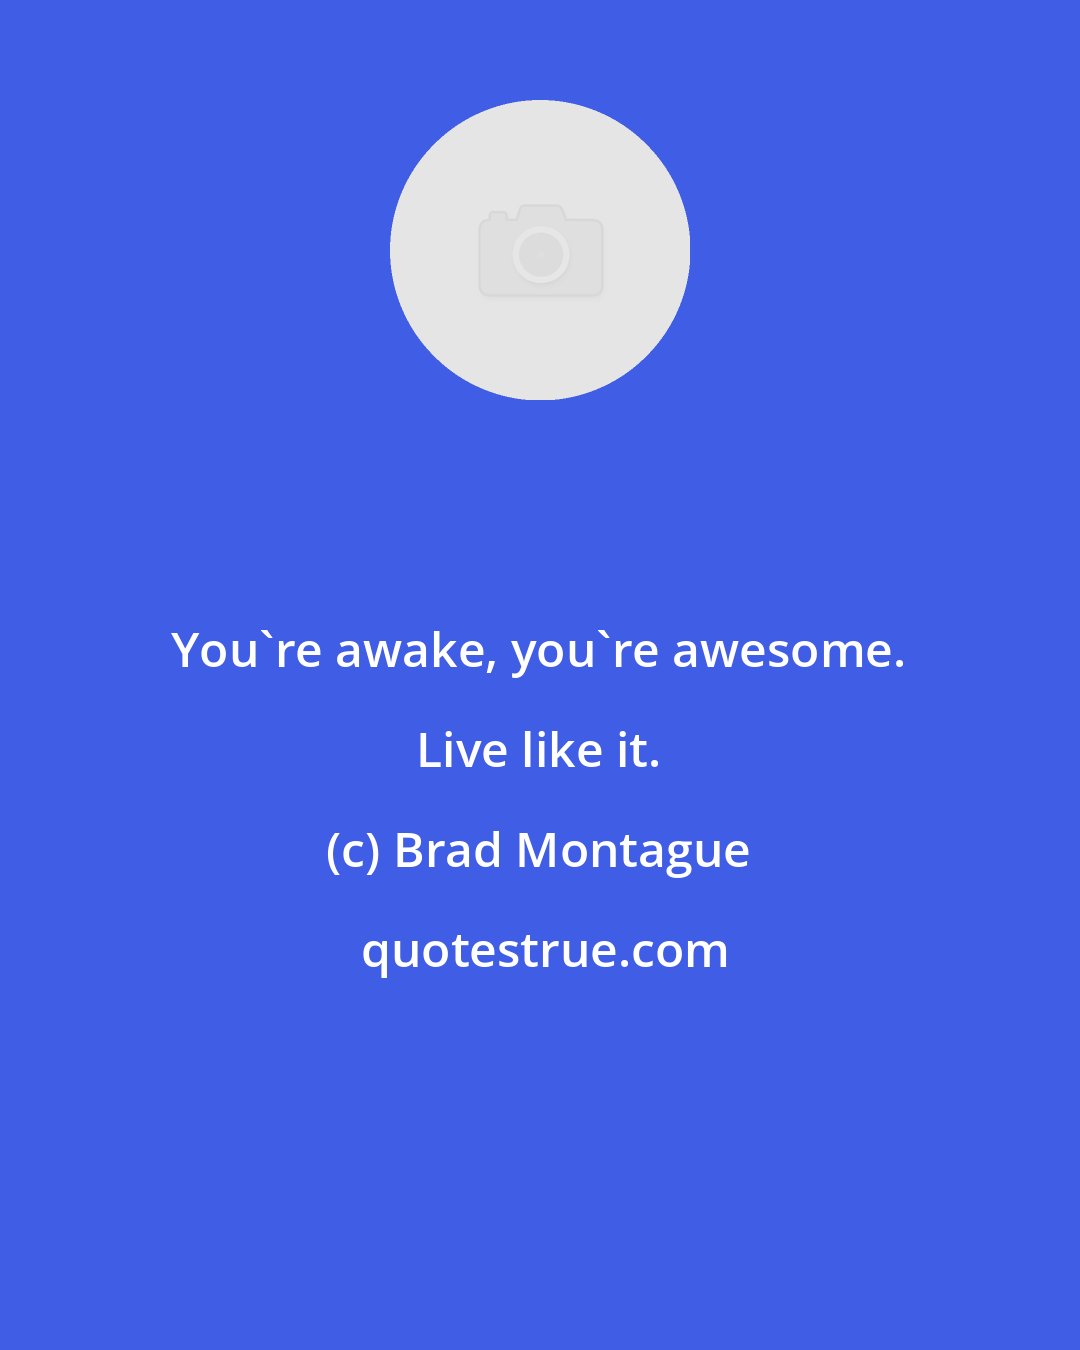 Brad Montague: You're awake, you're awesome. Live like it.